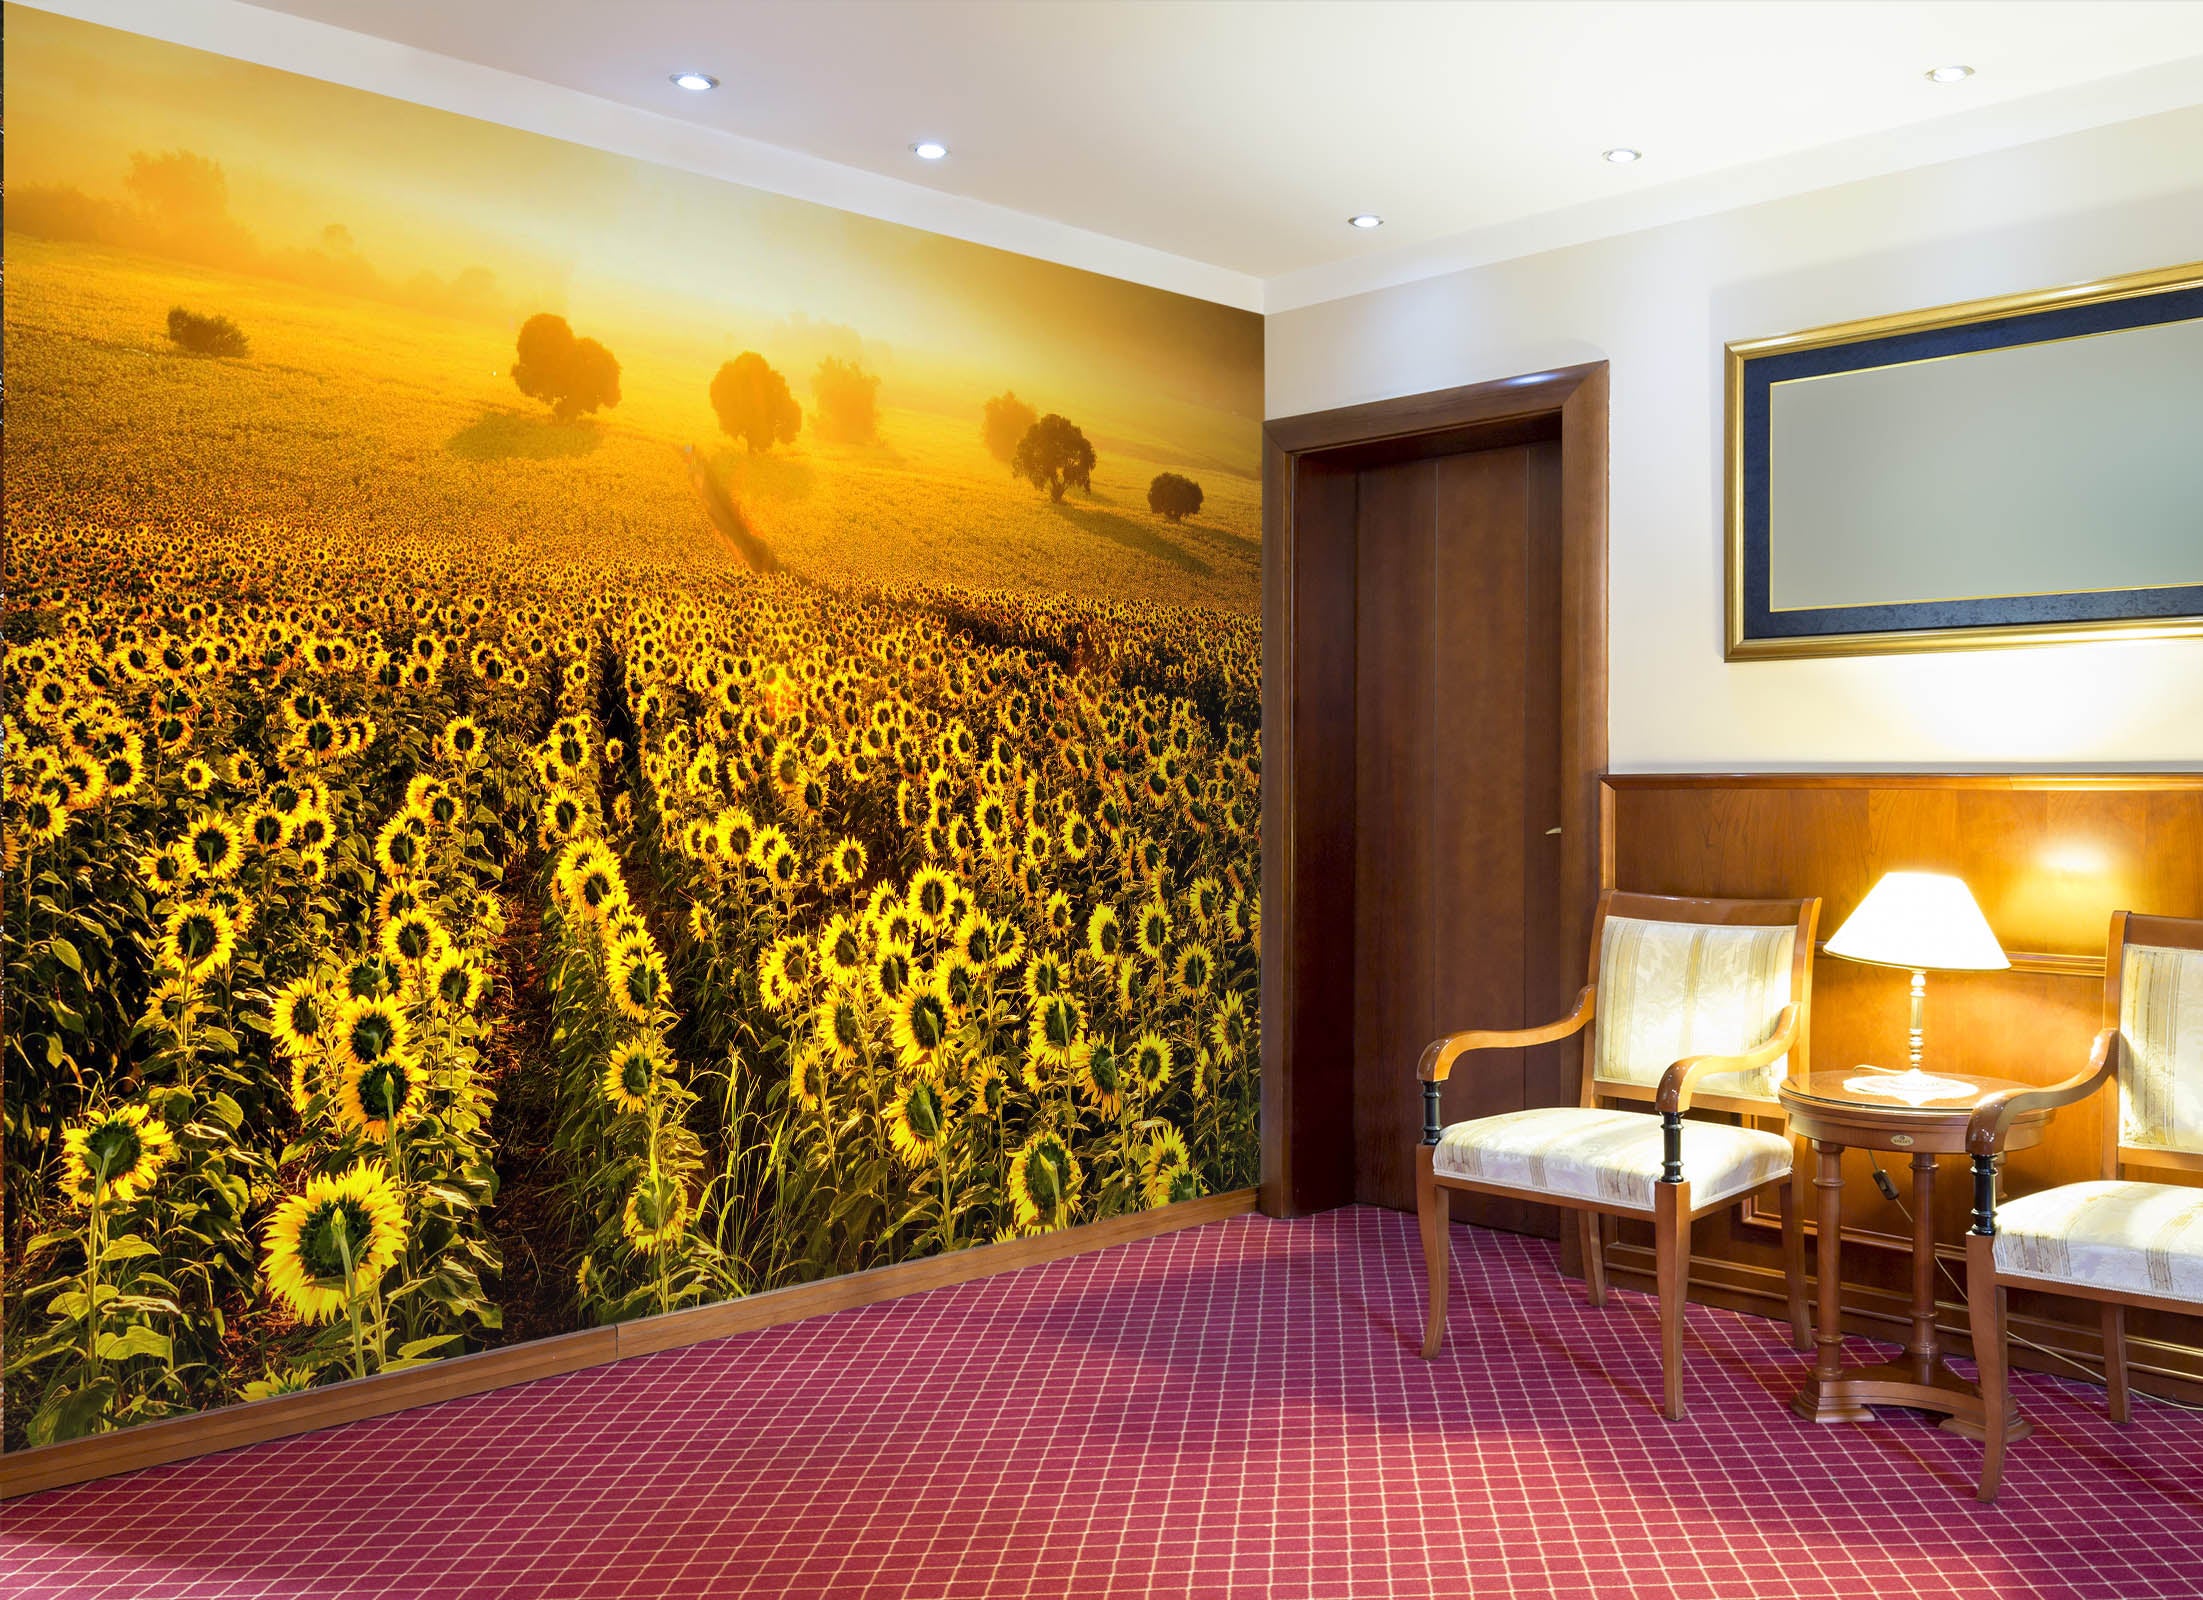 3D Sunflower Field 223 Wall Murals